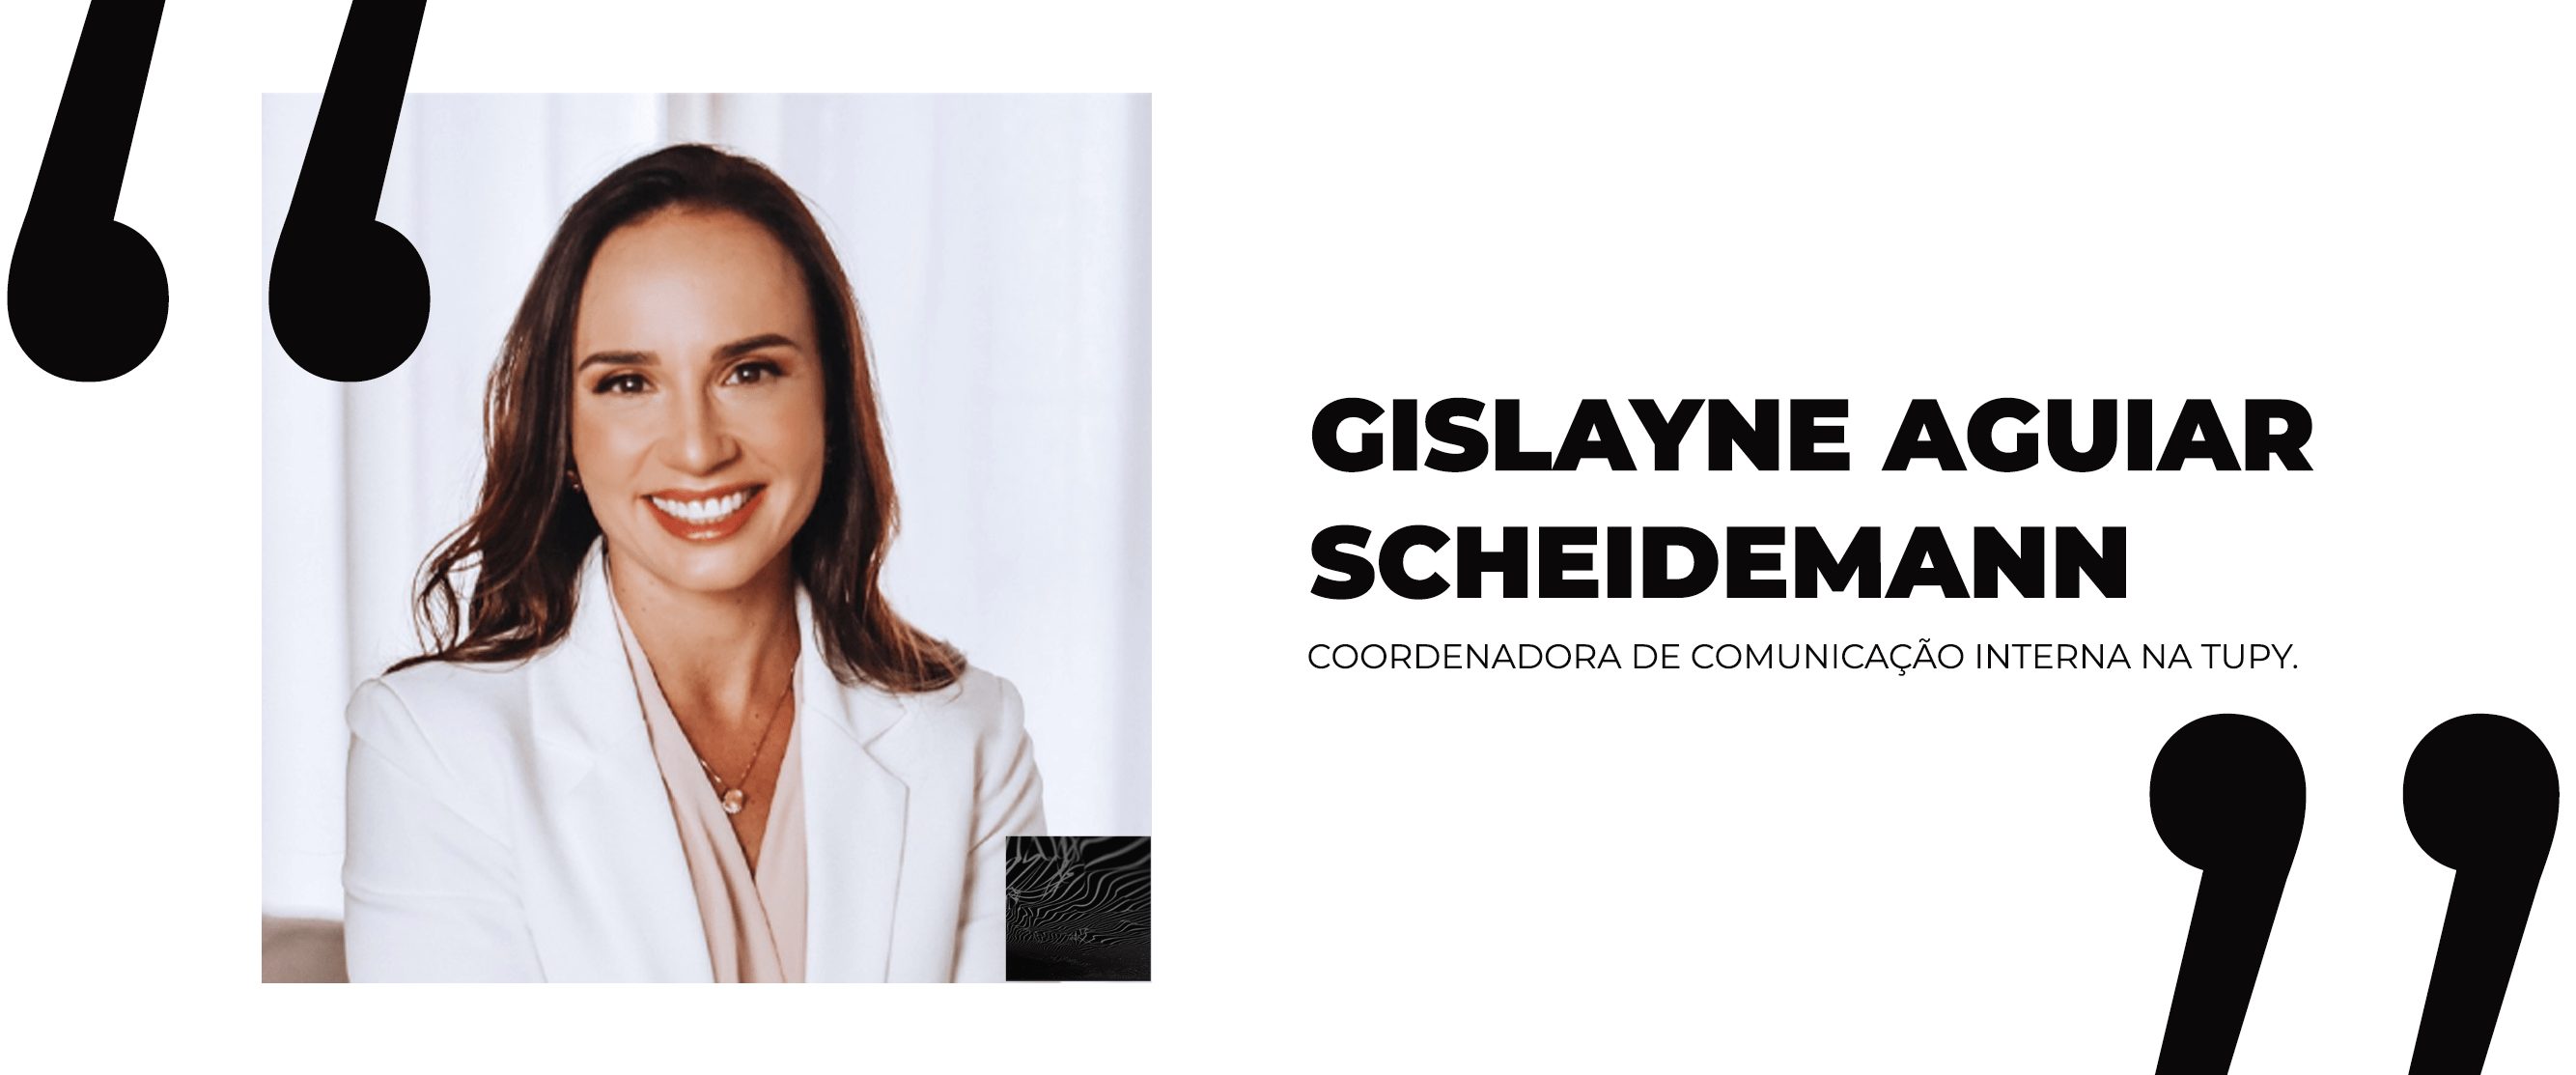 Gislayne Aguiar Scheidemann,  Coordenadora de Comunicação Interna na Tupy.